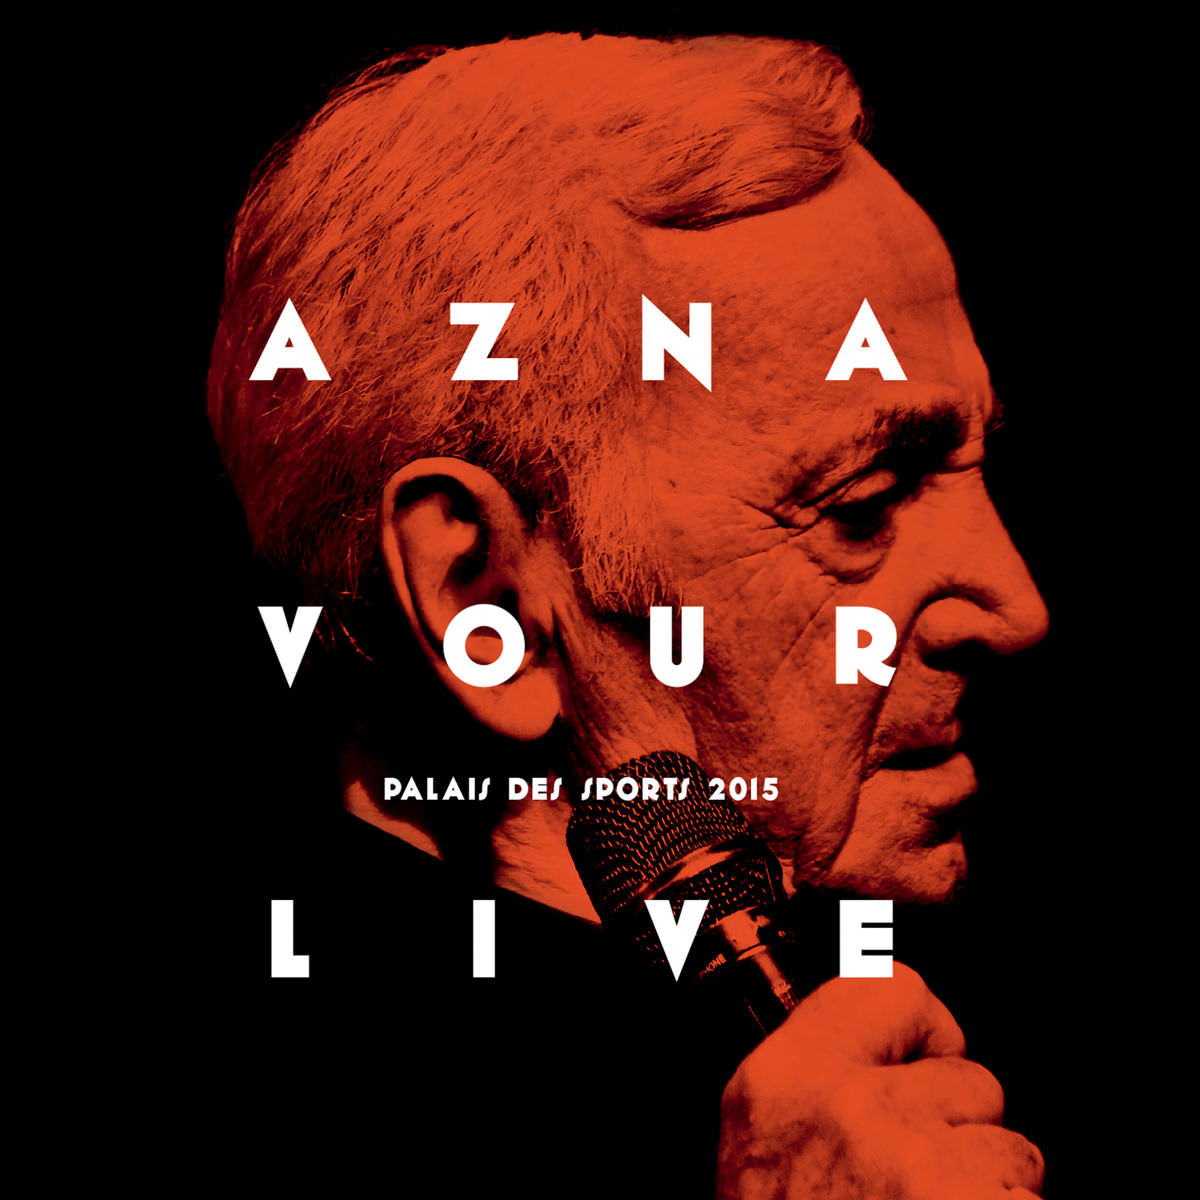 Charles Aznavour - Aznavour Live: Palais Des Sports 2015 (2015) [FLAC 24bit/48kHz]